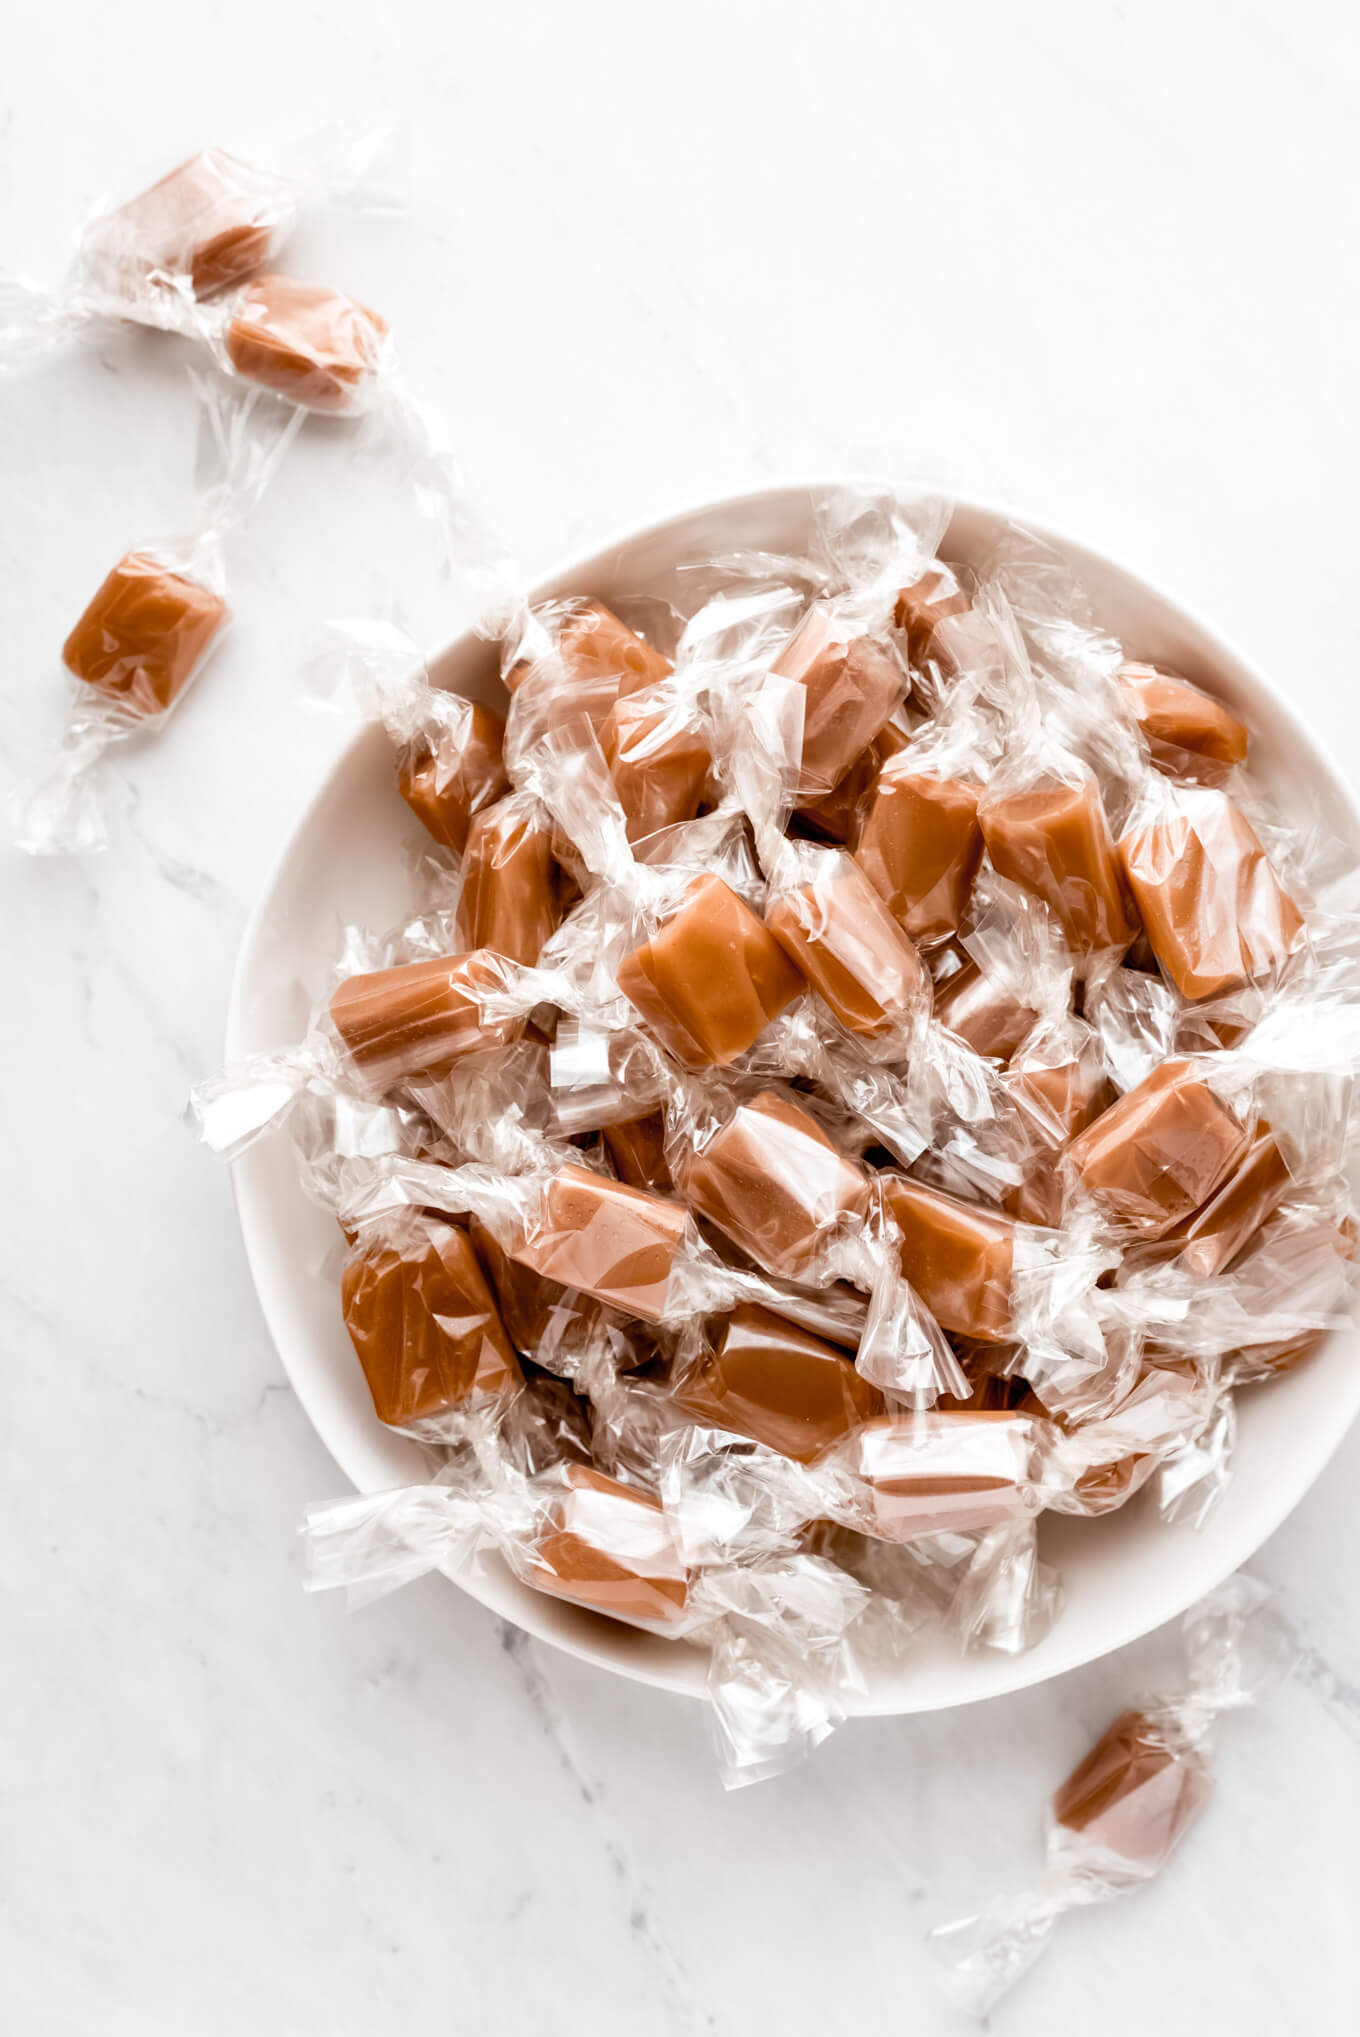 https://www.garnishandglaze.com/wp-content/uploads/2014/12/homemade-caramels-9.jpg